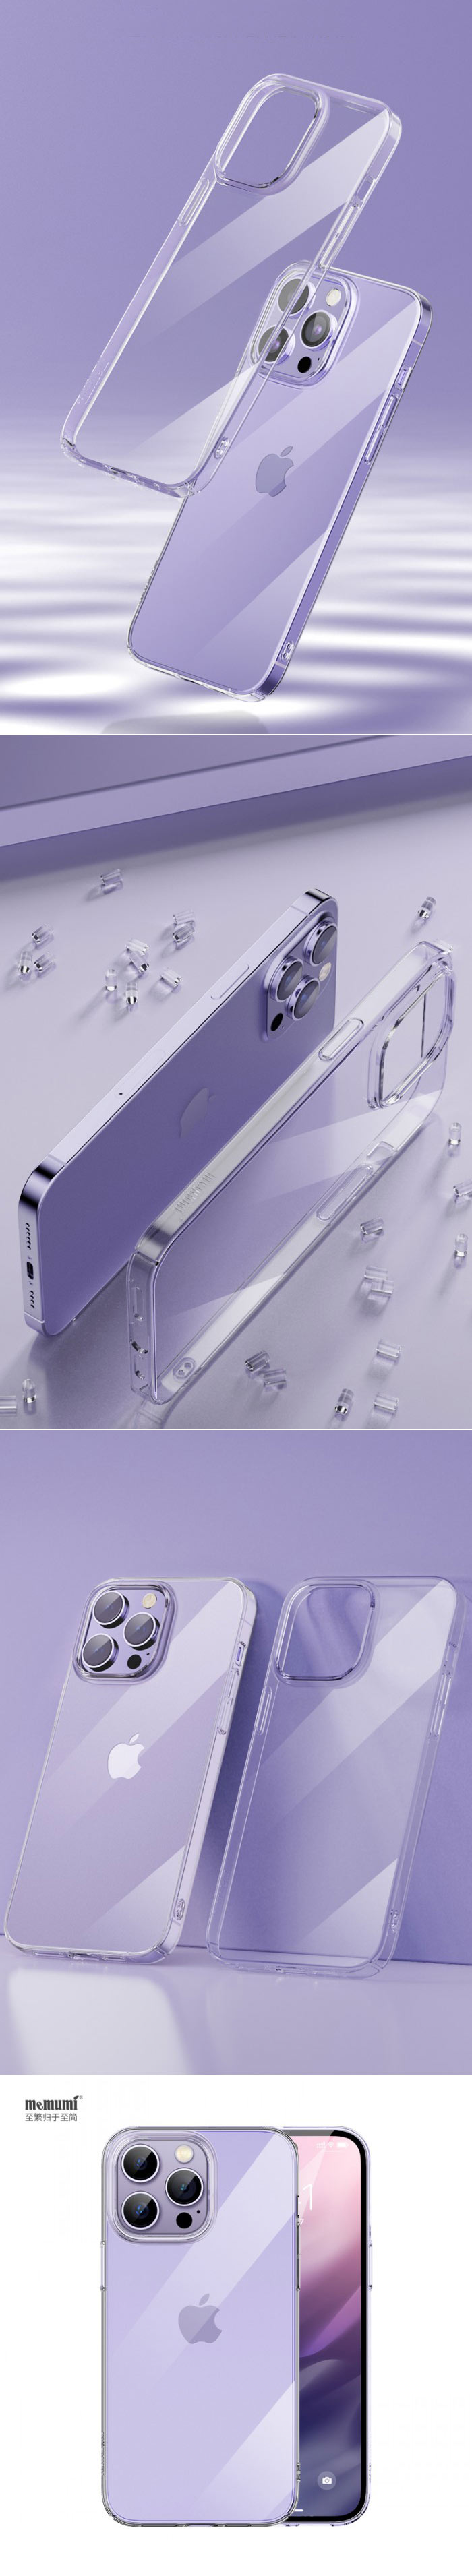 Ốp lưng iPhone 14 Pro Max Memumi Ultra Clear siêu mỏng, không ố vàng 25